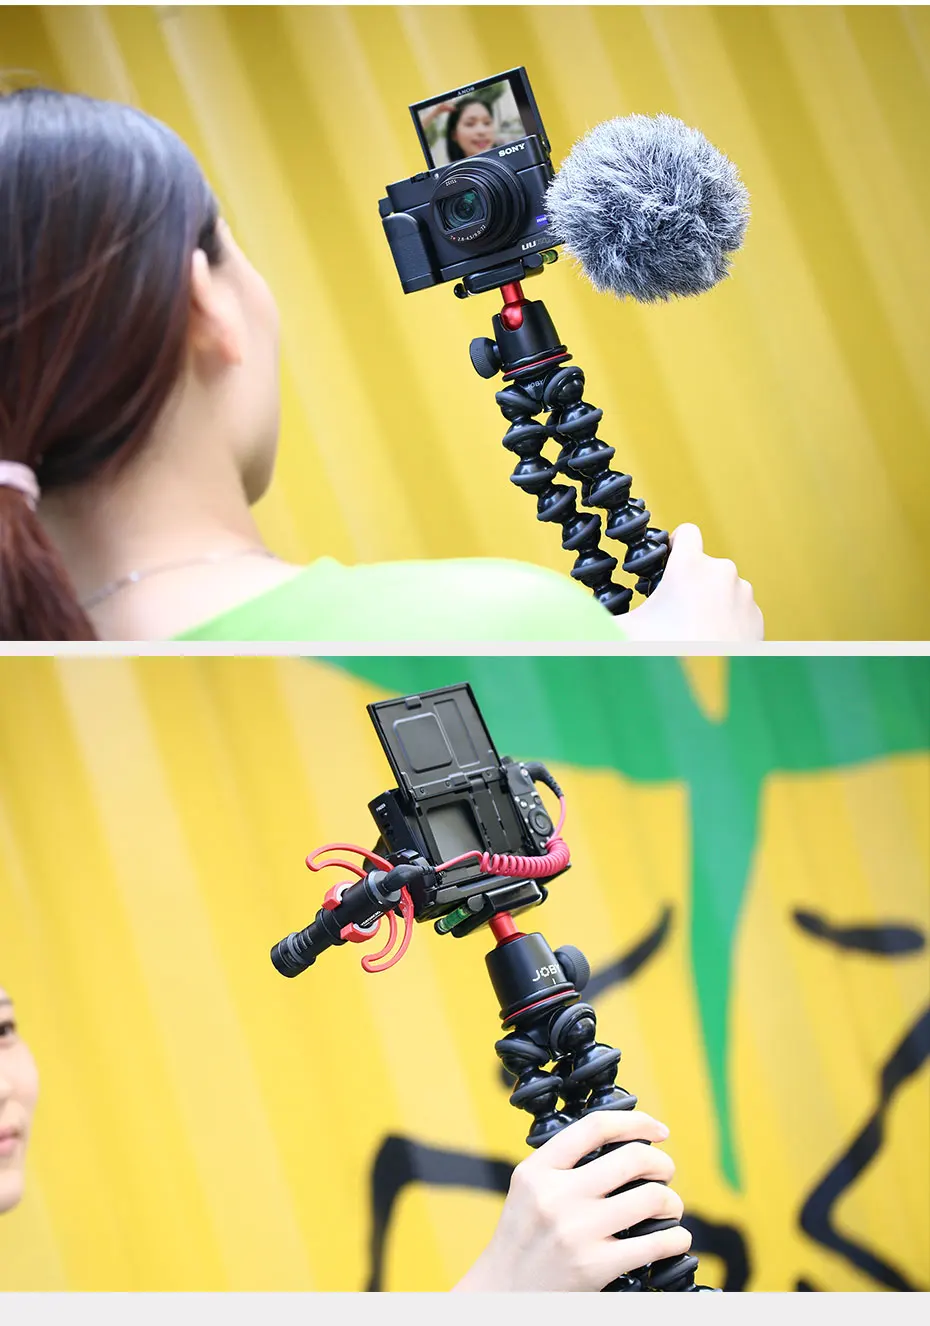 UURig R017 Vlog Камера держатель микрофона микрофонная стойка рукоятка пластина в форме буквы L W Холодный башмак крепление для Sony RX100 VII M7 Камера аксессуары